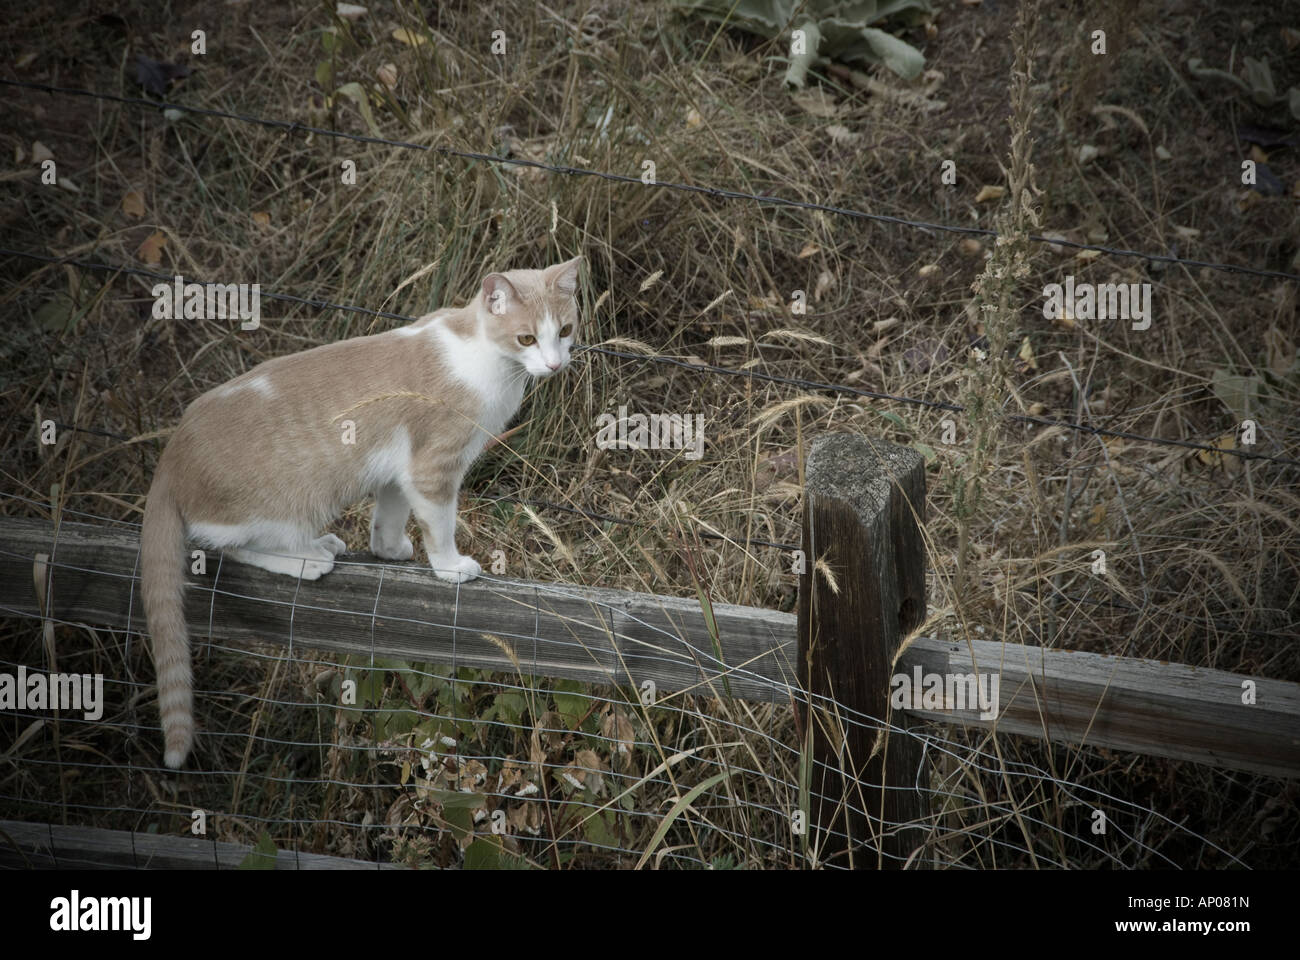 Marrón y blanco gato atigrado de pie sobre el riel superior de valla de madera cerca de campo Foto de stock